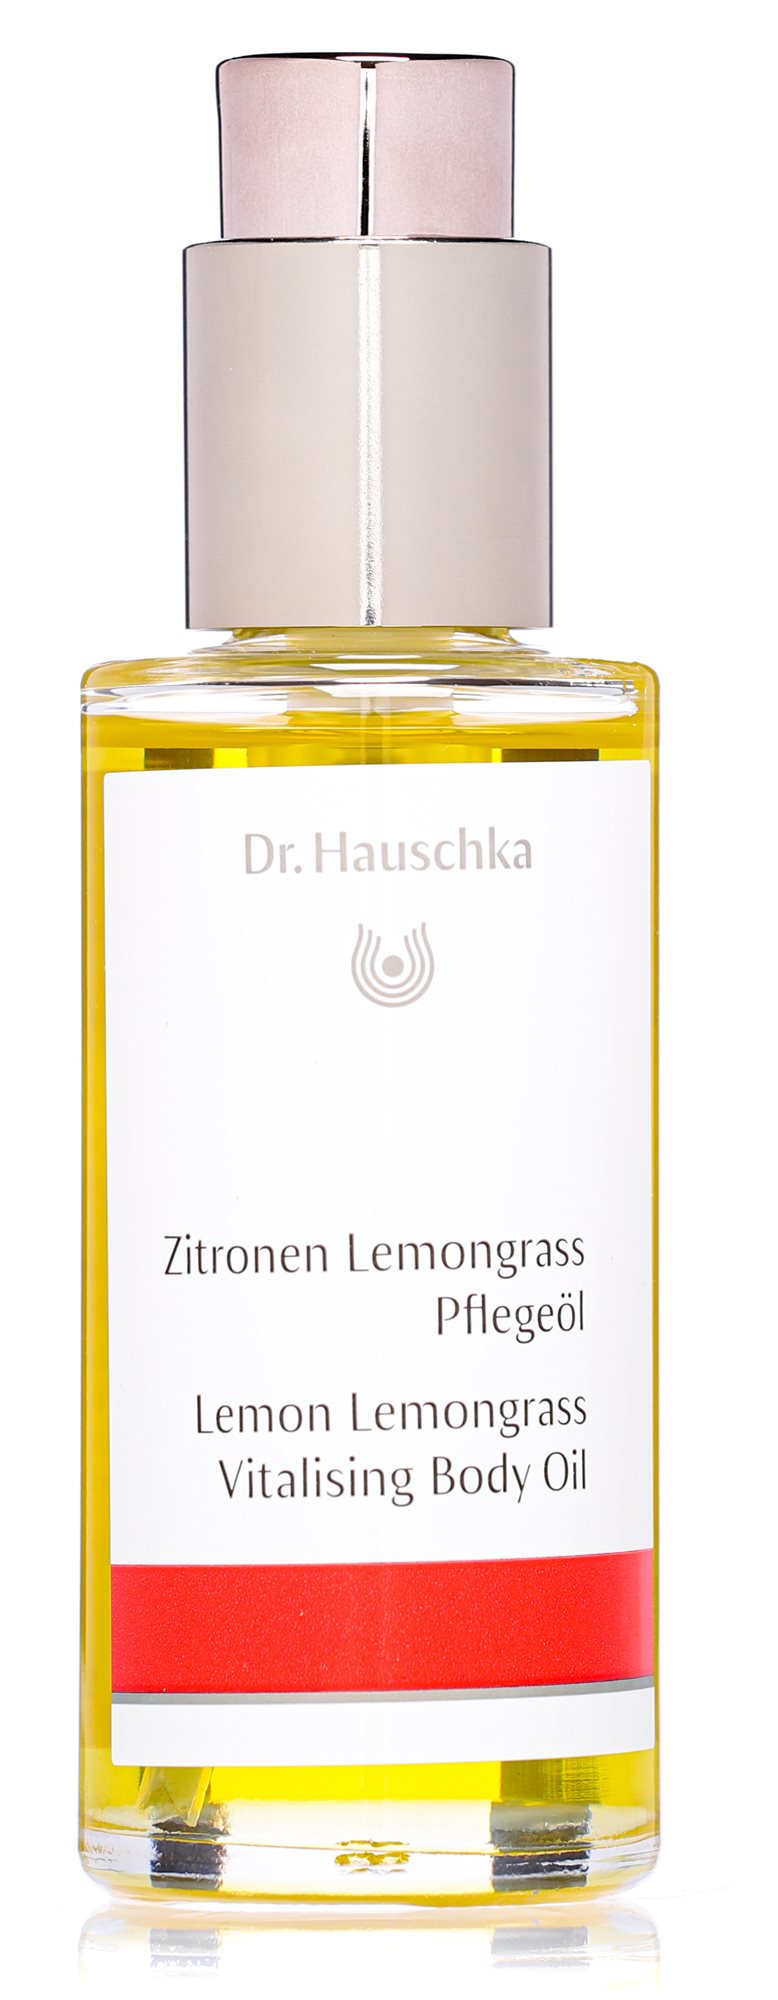 DR. HAUSCHKA Lemon Lemongrass Vitalising Body Oil 75 ml